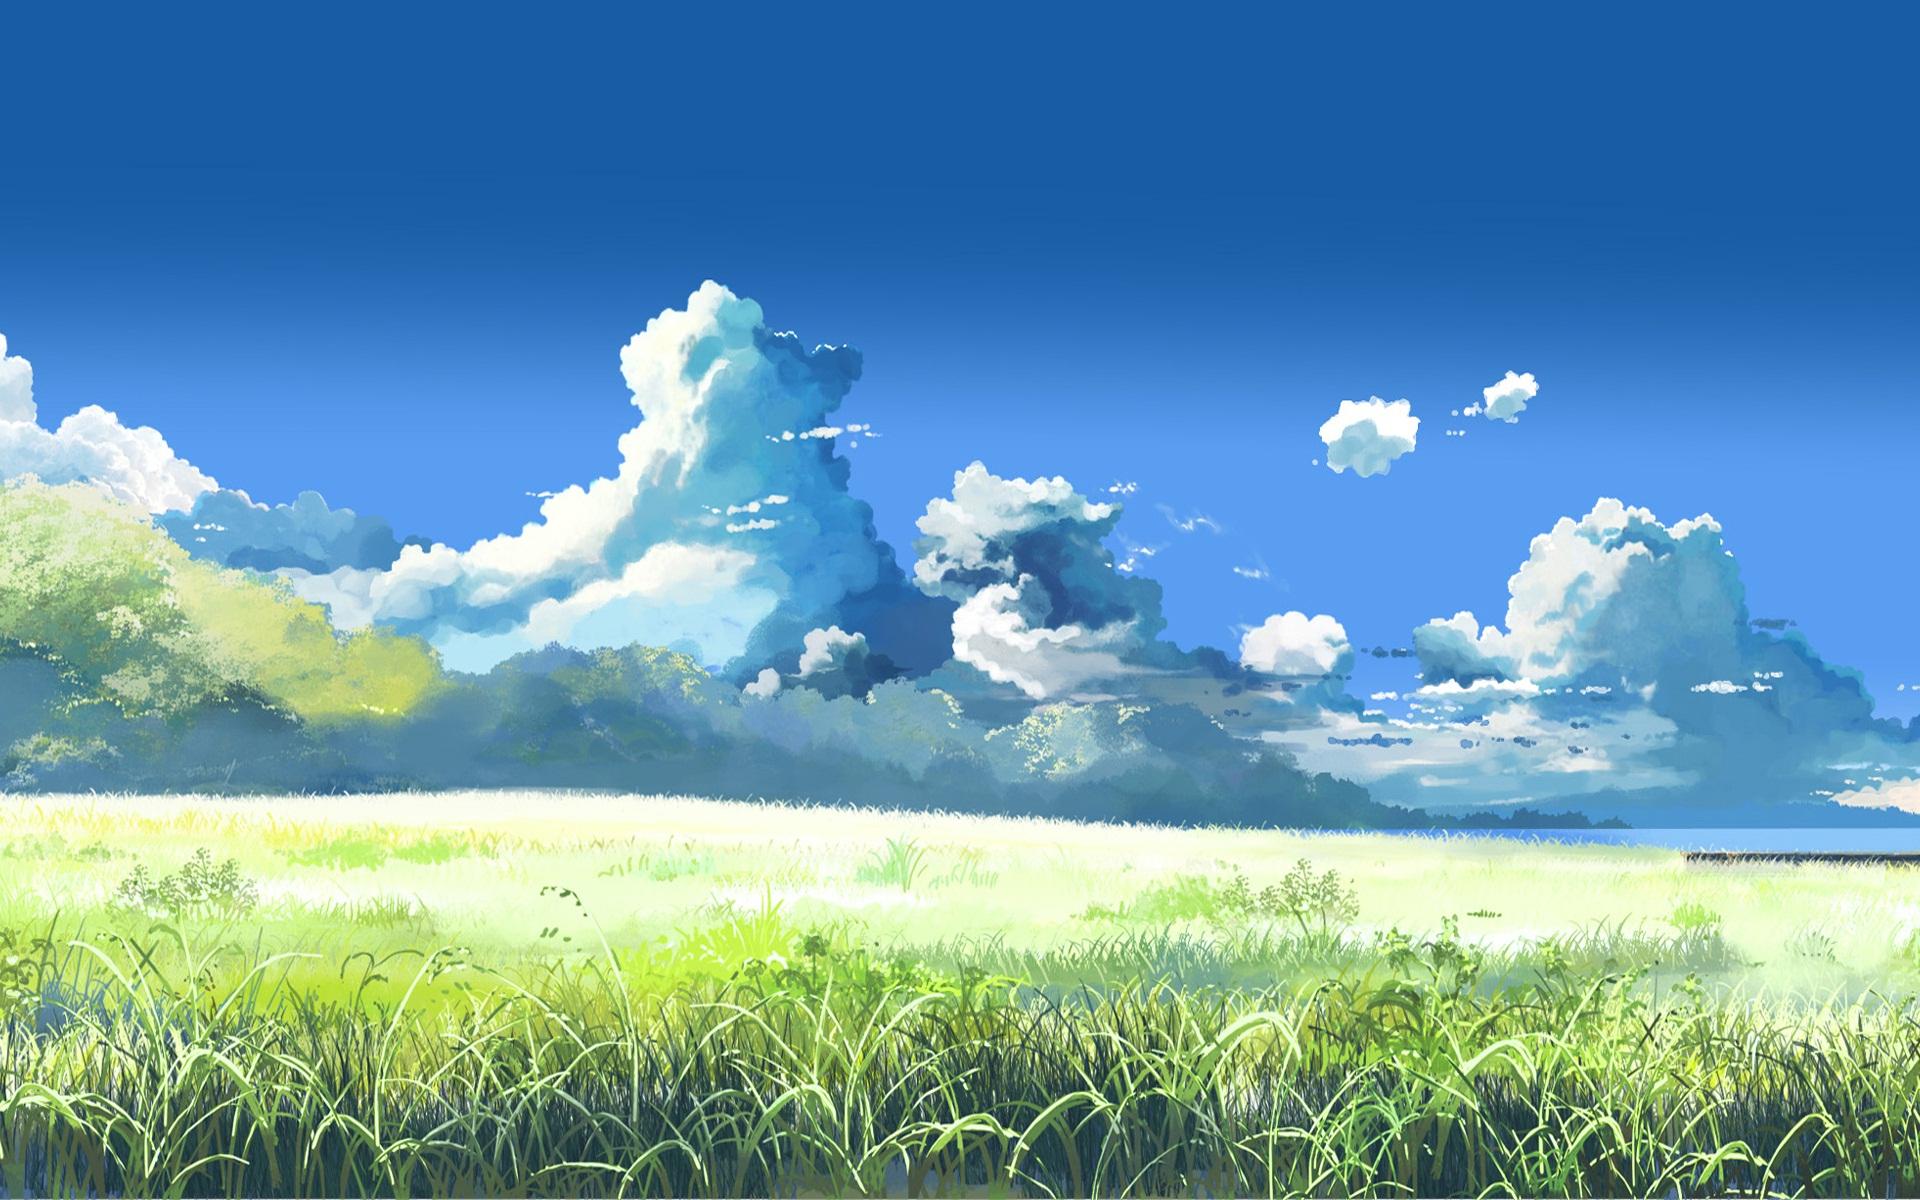 anime landscape wallpaper,sky,natural landscape,nature,daytime,cloud